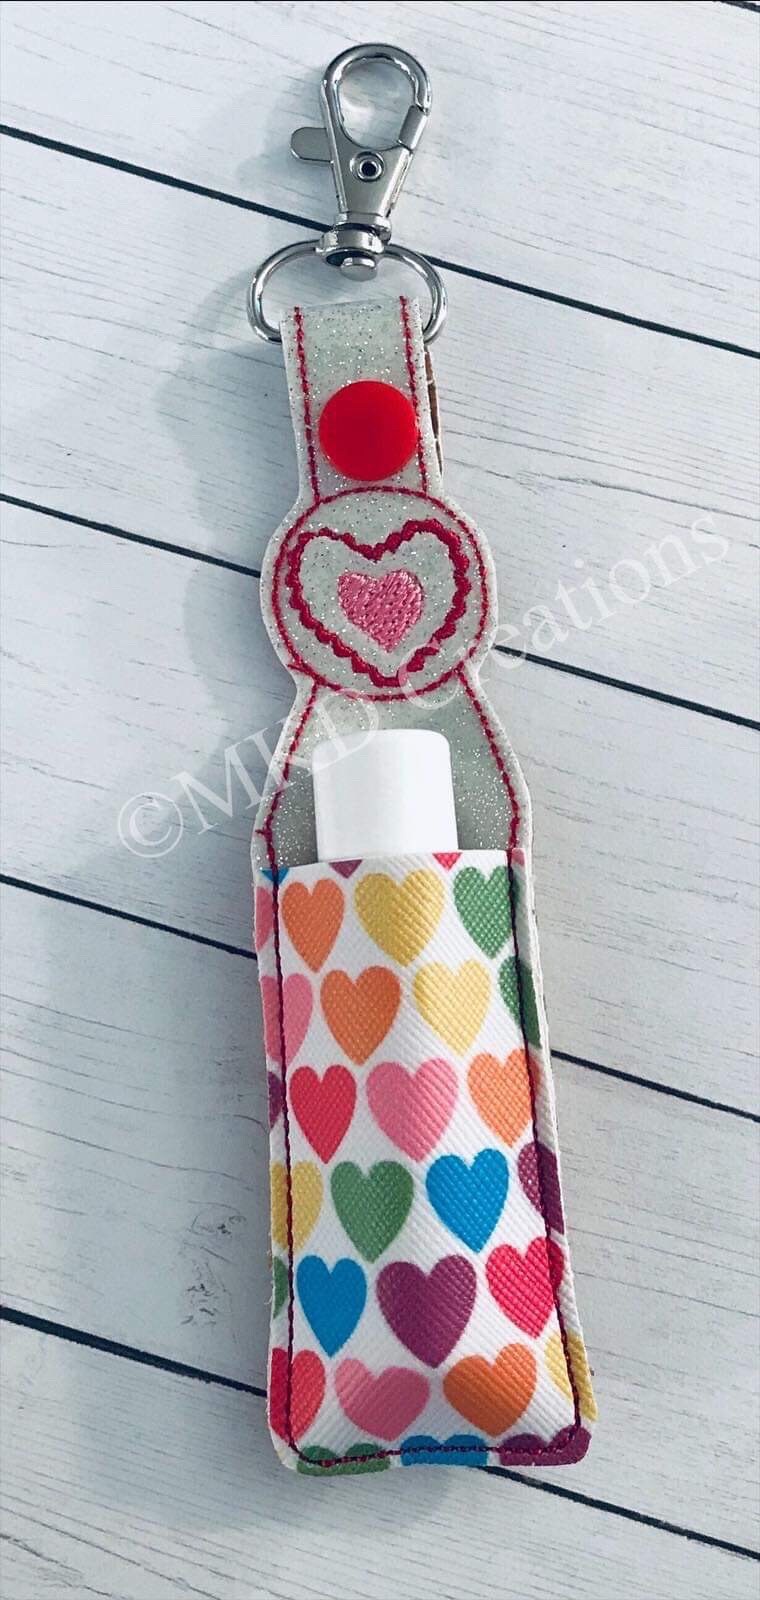 Multi colored hearts Key chain lip balm holder with lip balm | key chain lip balm holder lip balm included Vanilla or pomegranate